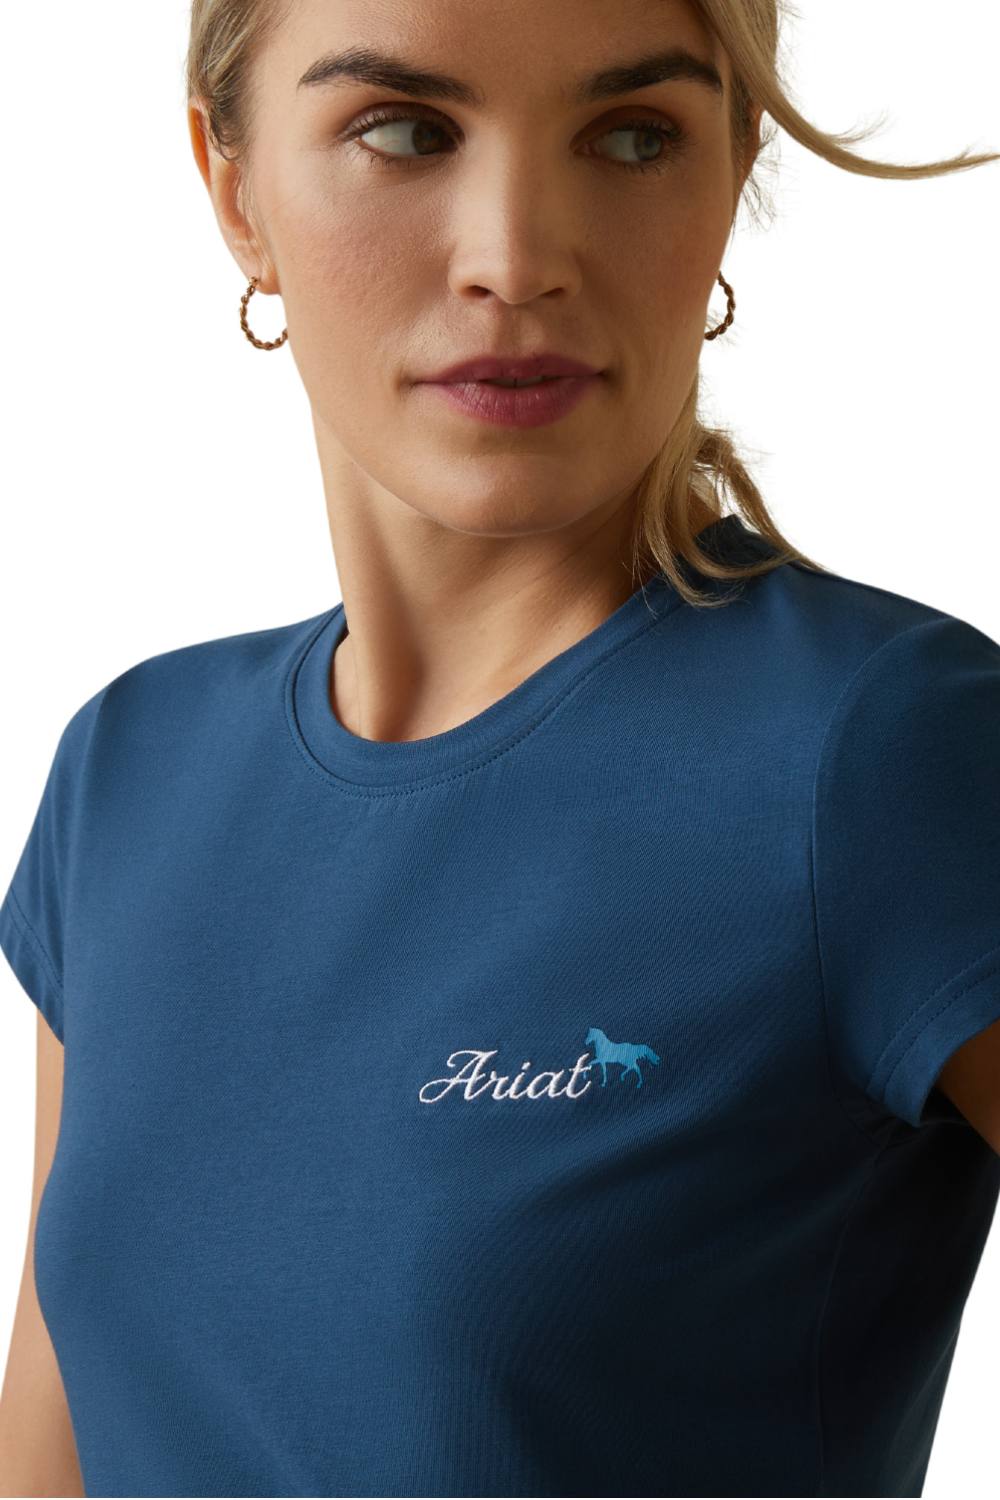 Ariat Womens Logo Script Short Sleeved T-Shirt